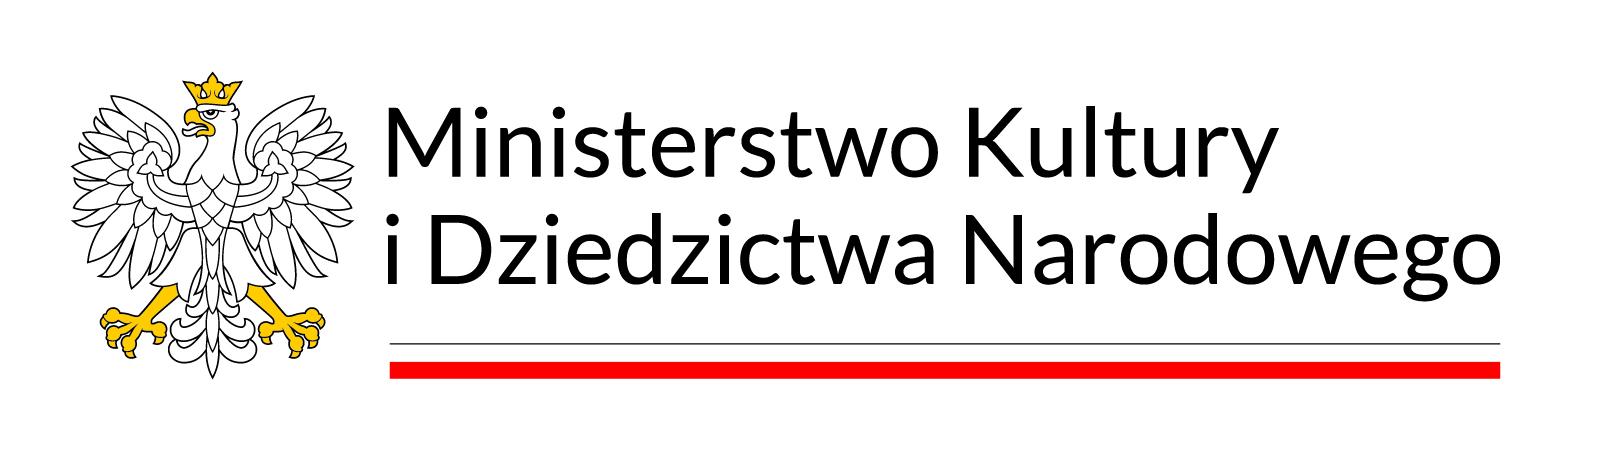 logo MDKiN